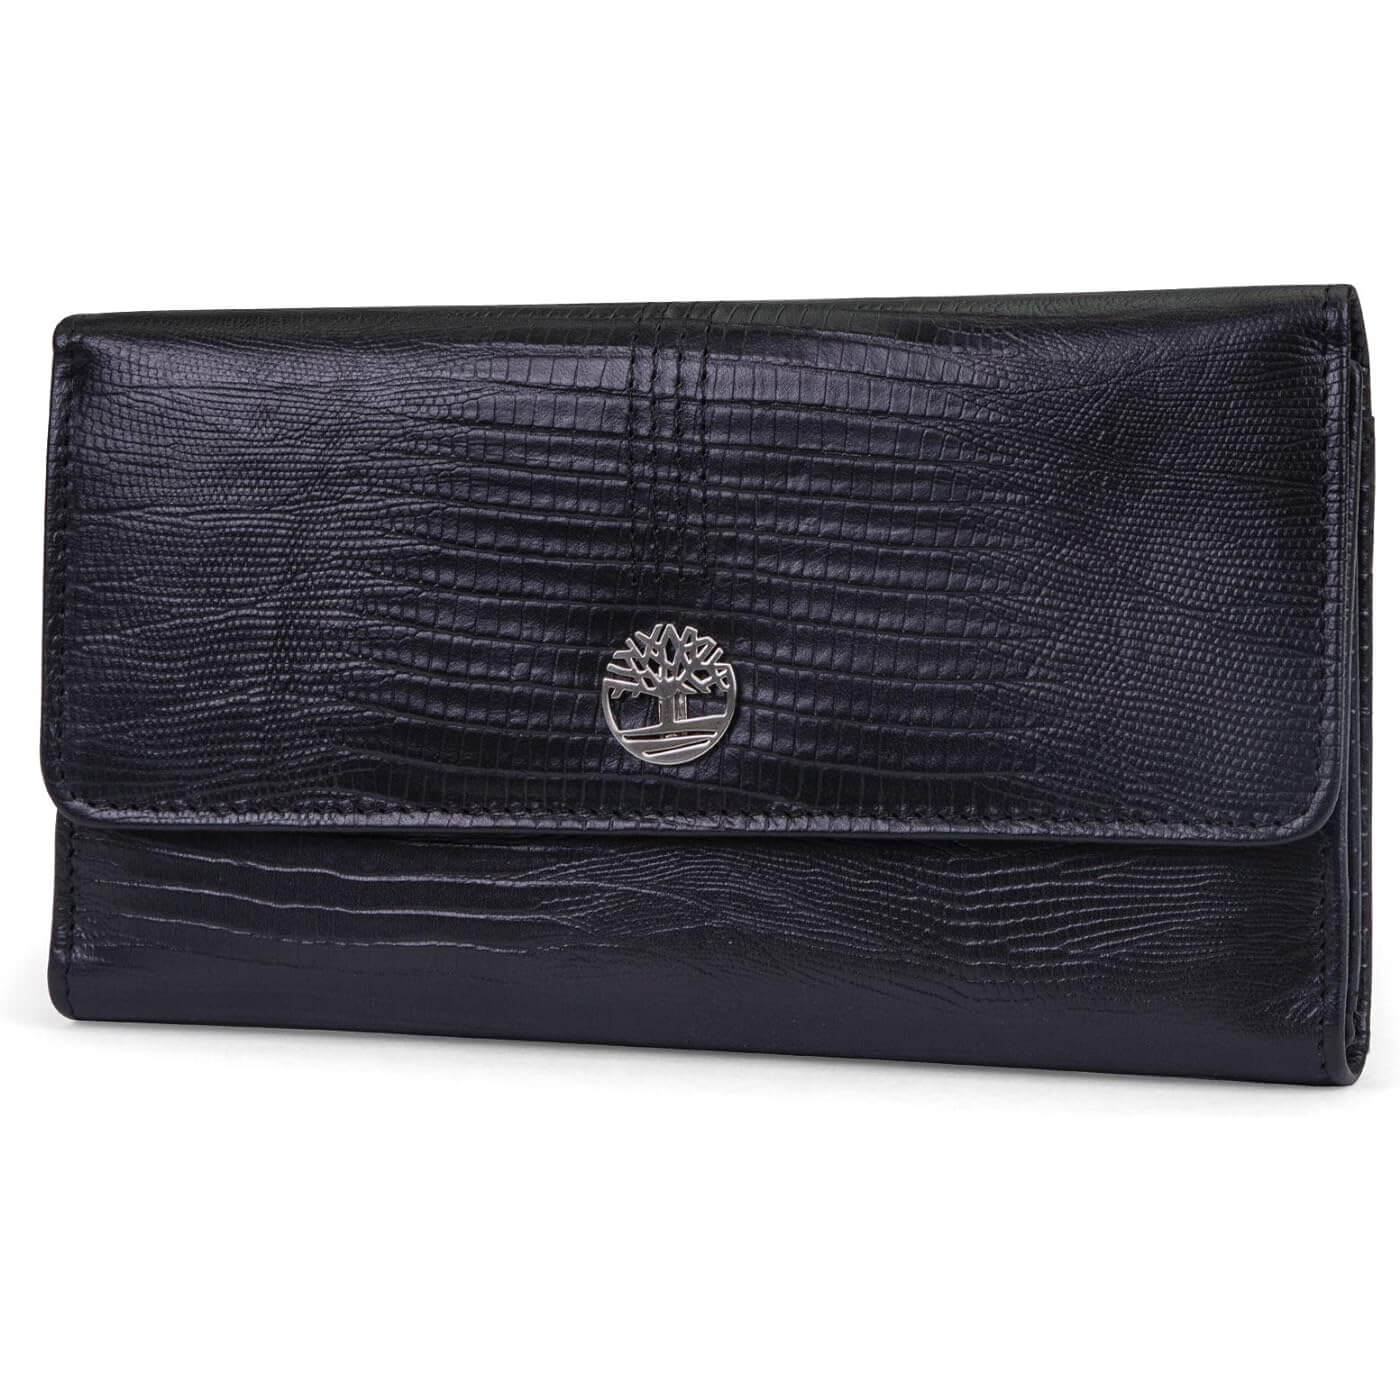 Кожаный кошелек-клатч Timberland RFID Flap Organizer, черный женский кошелек из натуральной кожи дамский удлиненный клатч с двойной молнией и rfid кредитница бумажники для телефона